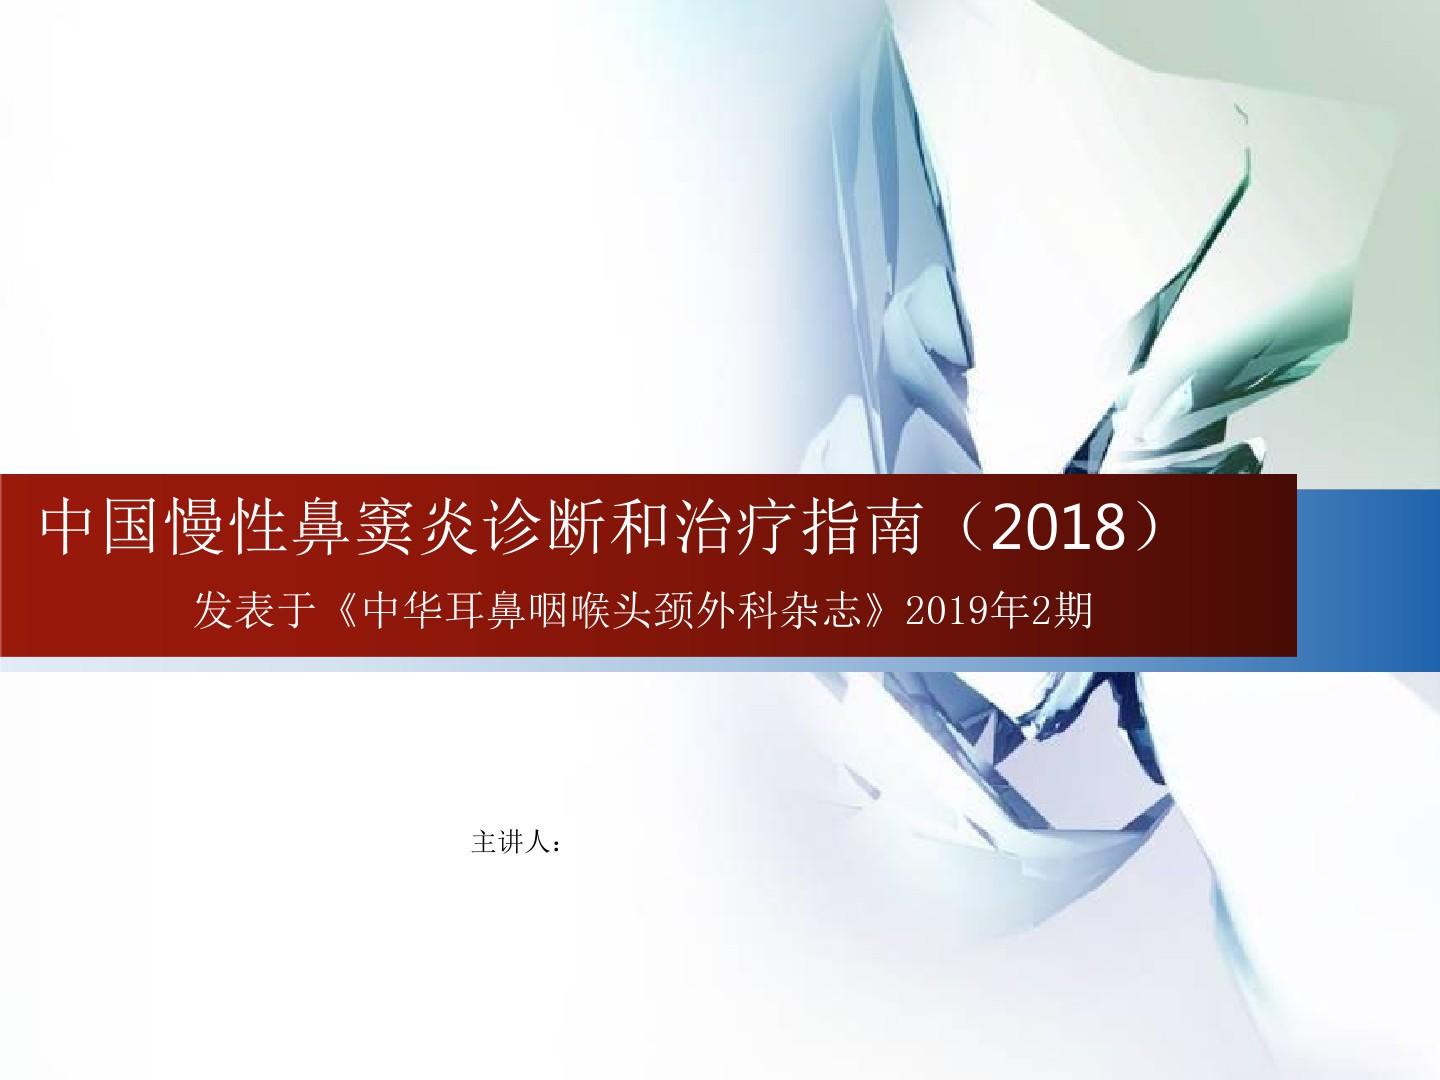 中国慢性鼻窦炎诊断和治疗指南(2018)